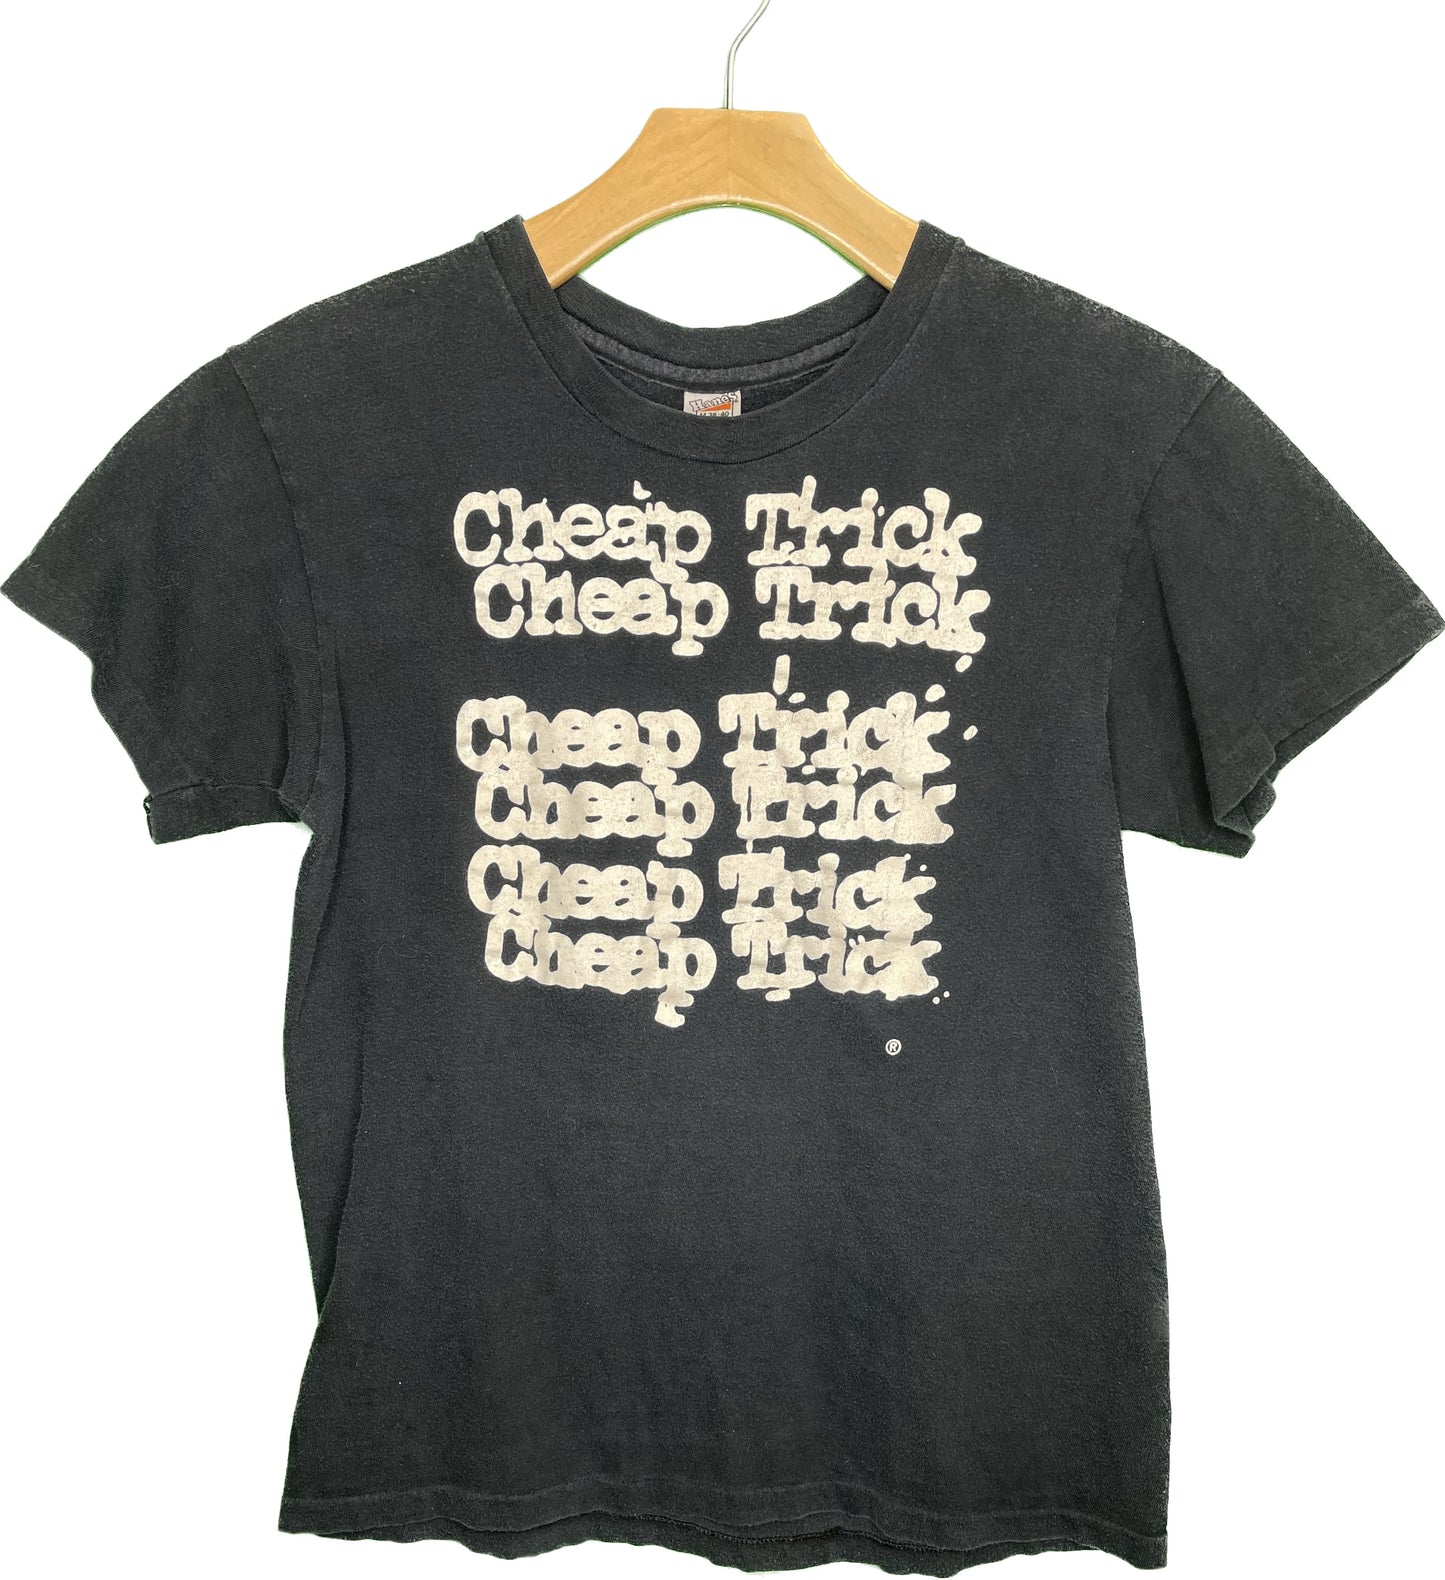 Vintage S 1977 Cheap Trick Self Titled Concert Tour T-Shirt Black